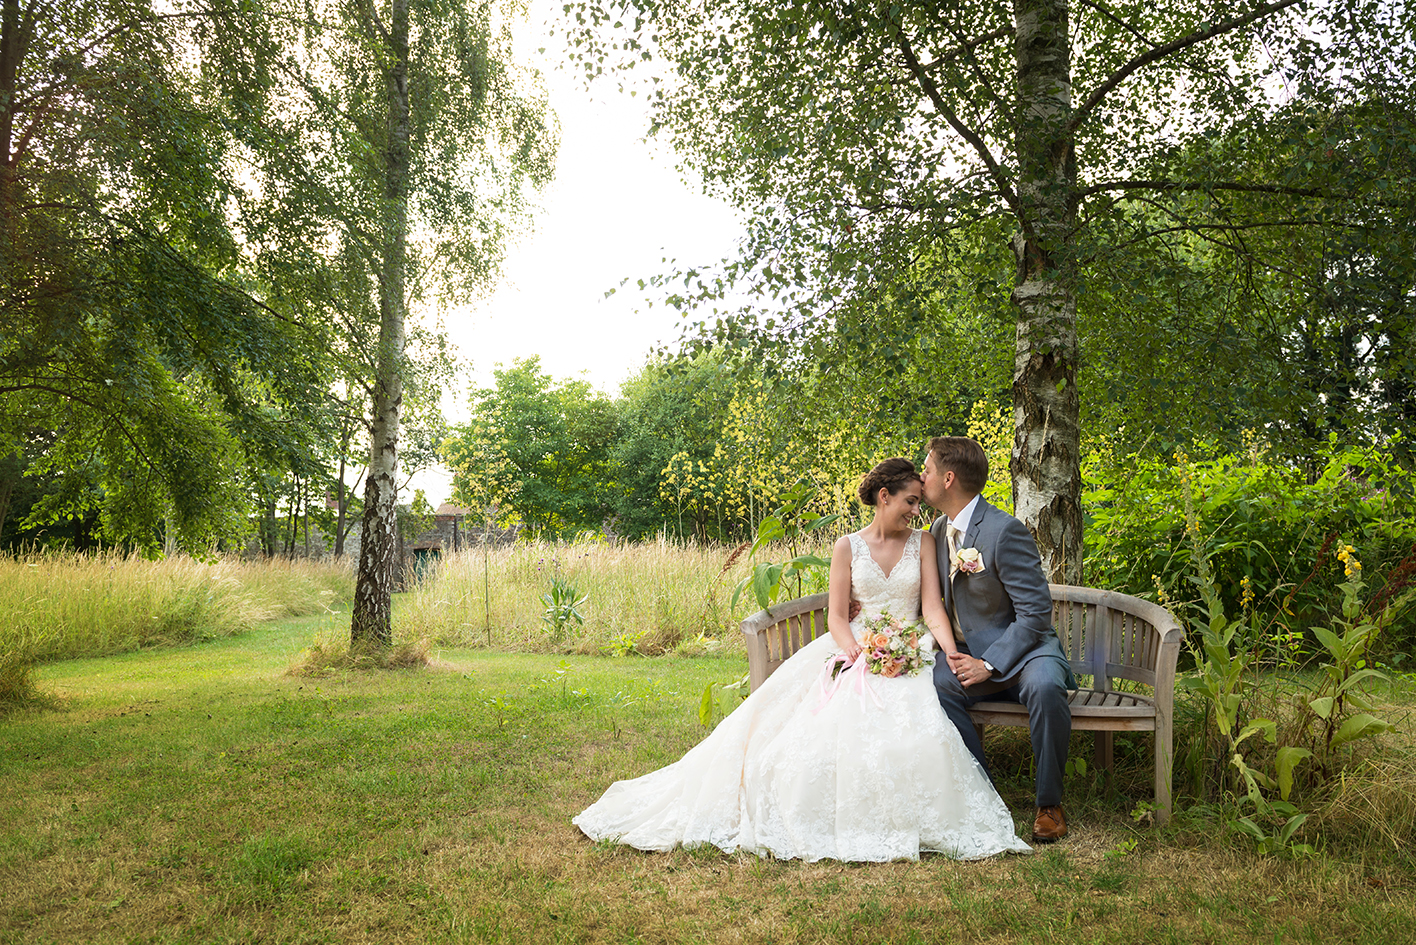 Wedding blog bamboozled by photography styles photographers help woodland photo